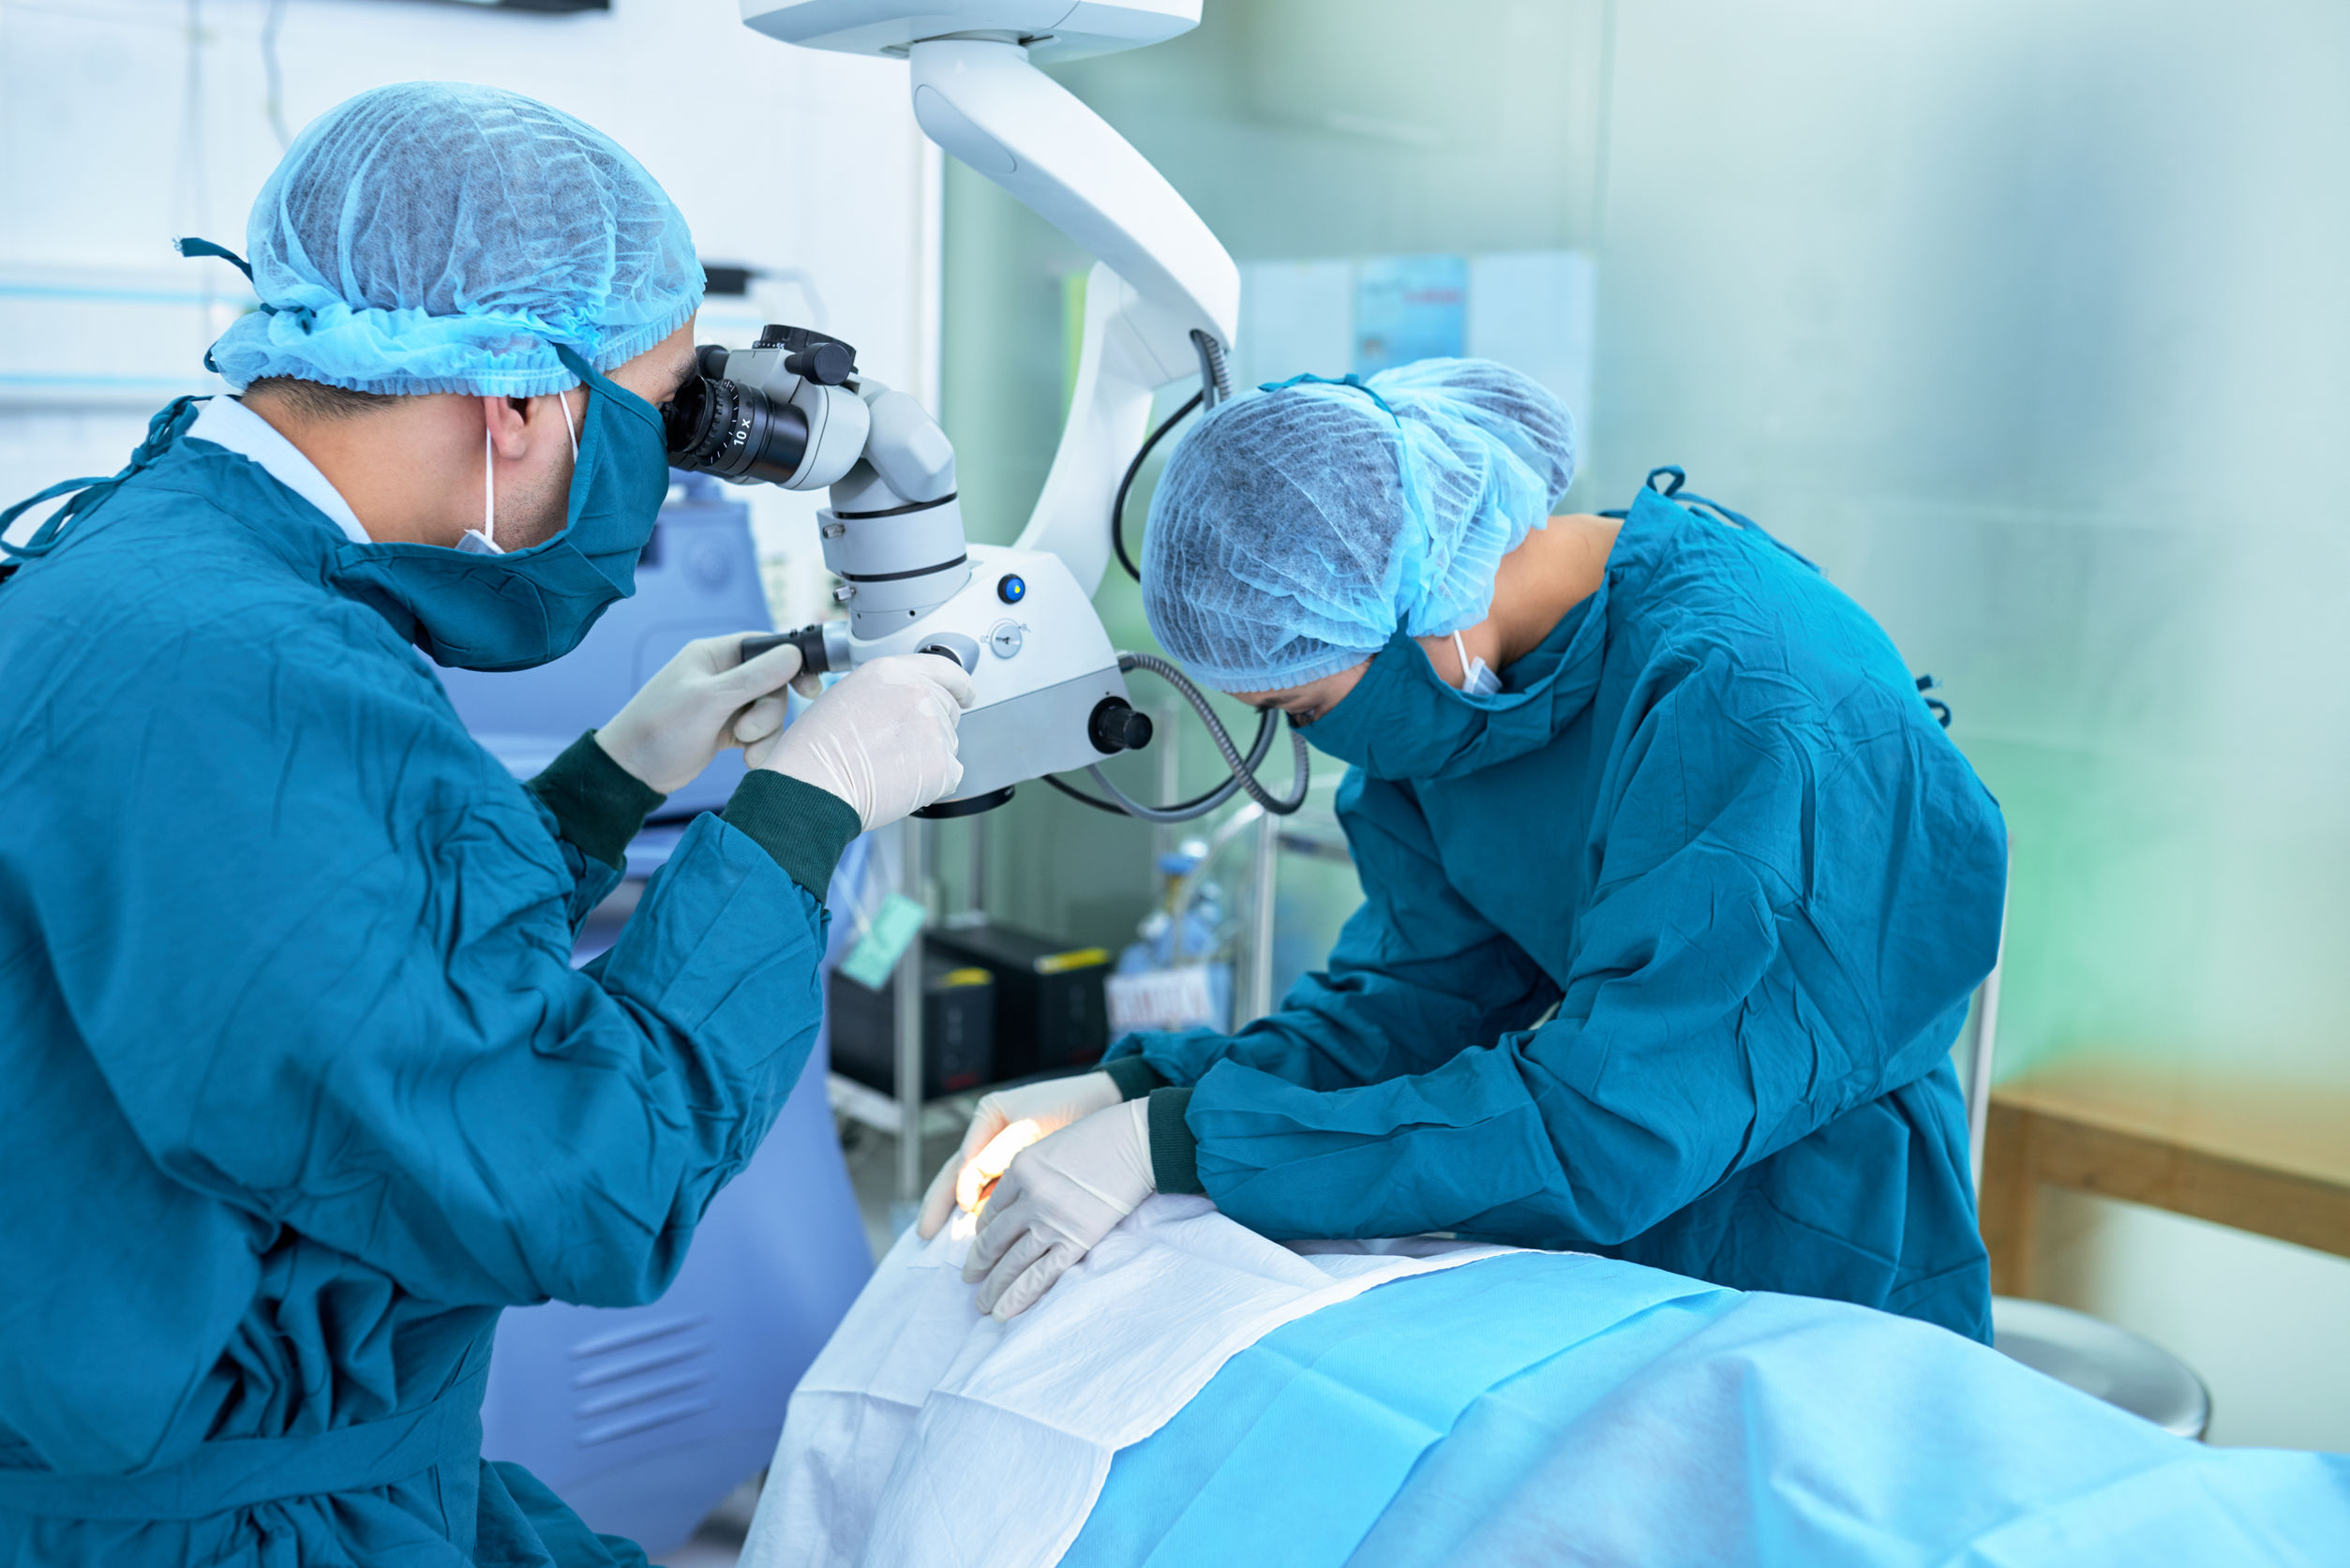  Mutirão de consultas oftalmológicas para catarata e pterígio será realizado na Policlínica nos dias 4 e 5 de maio